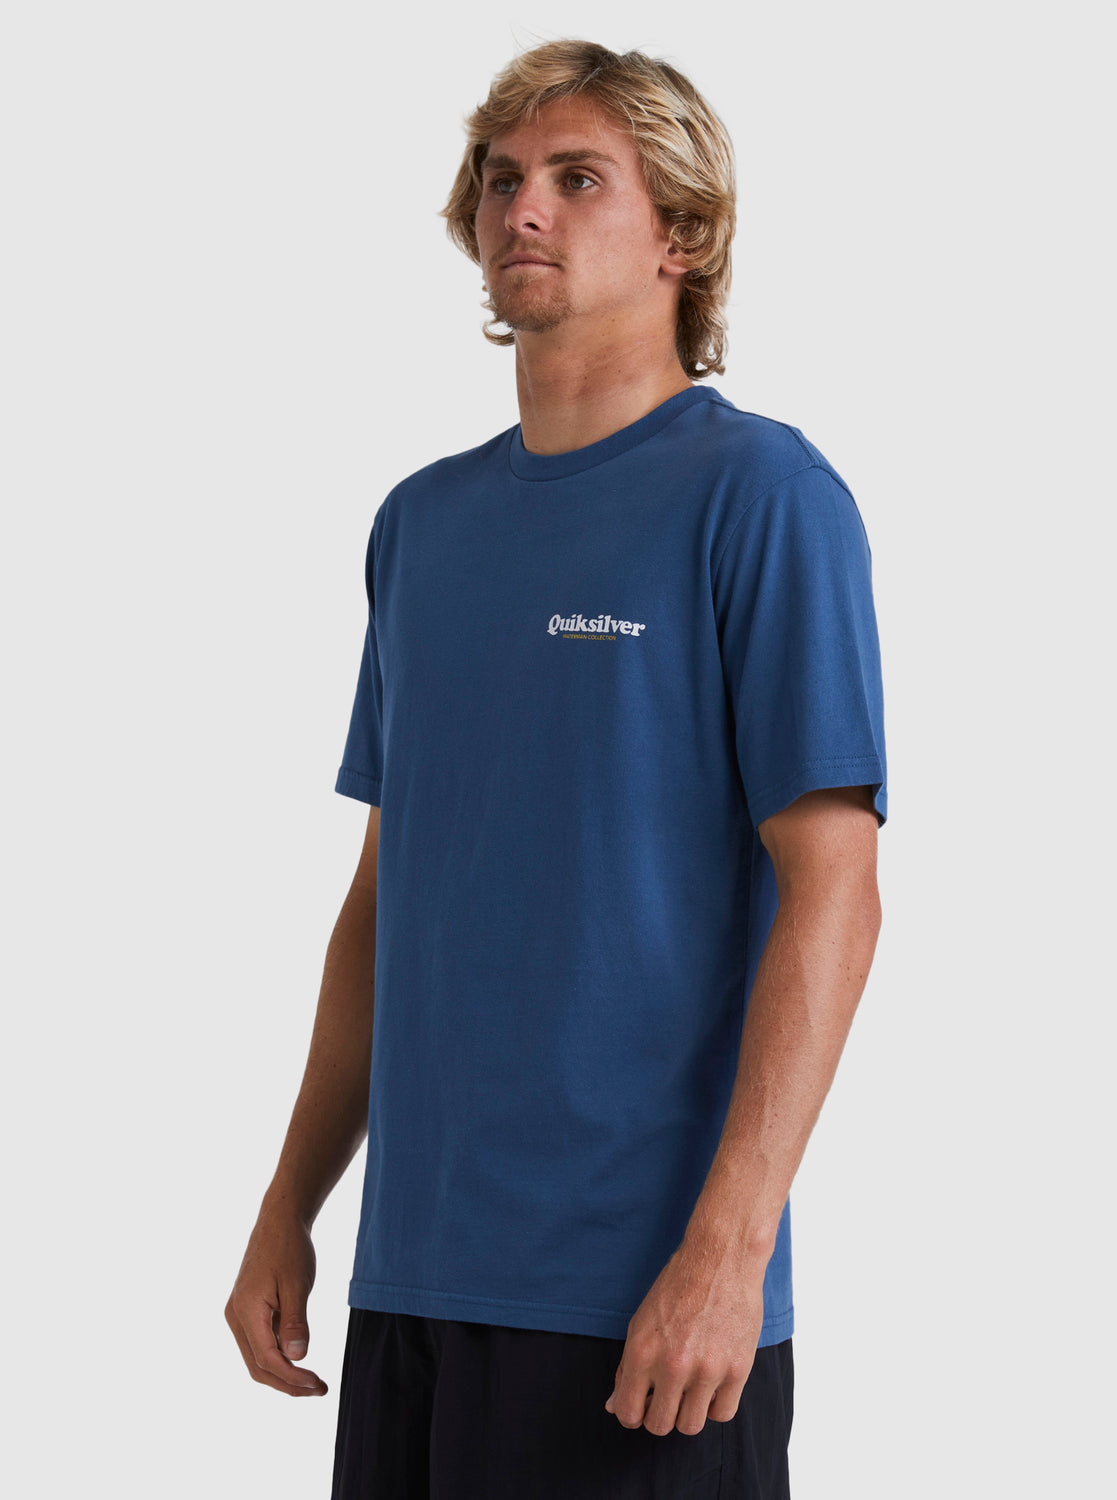 Quiksilver Mens Distant Shore T-Shirt